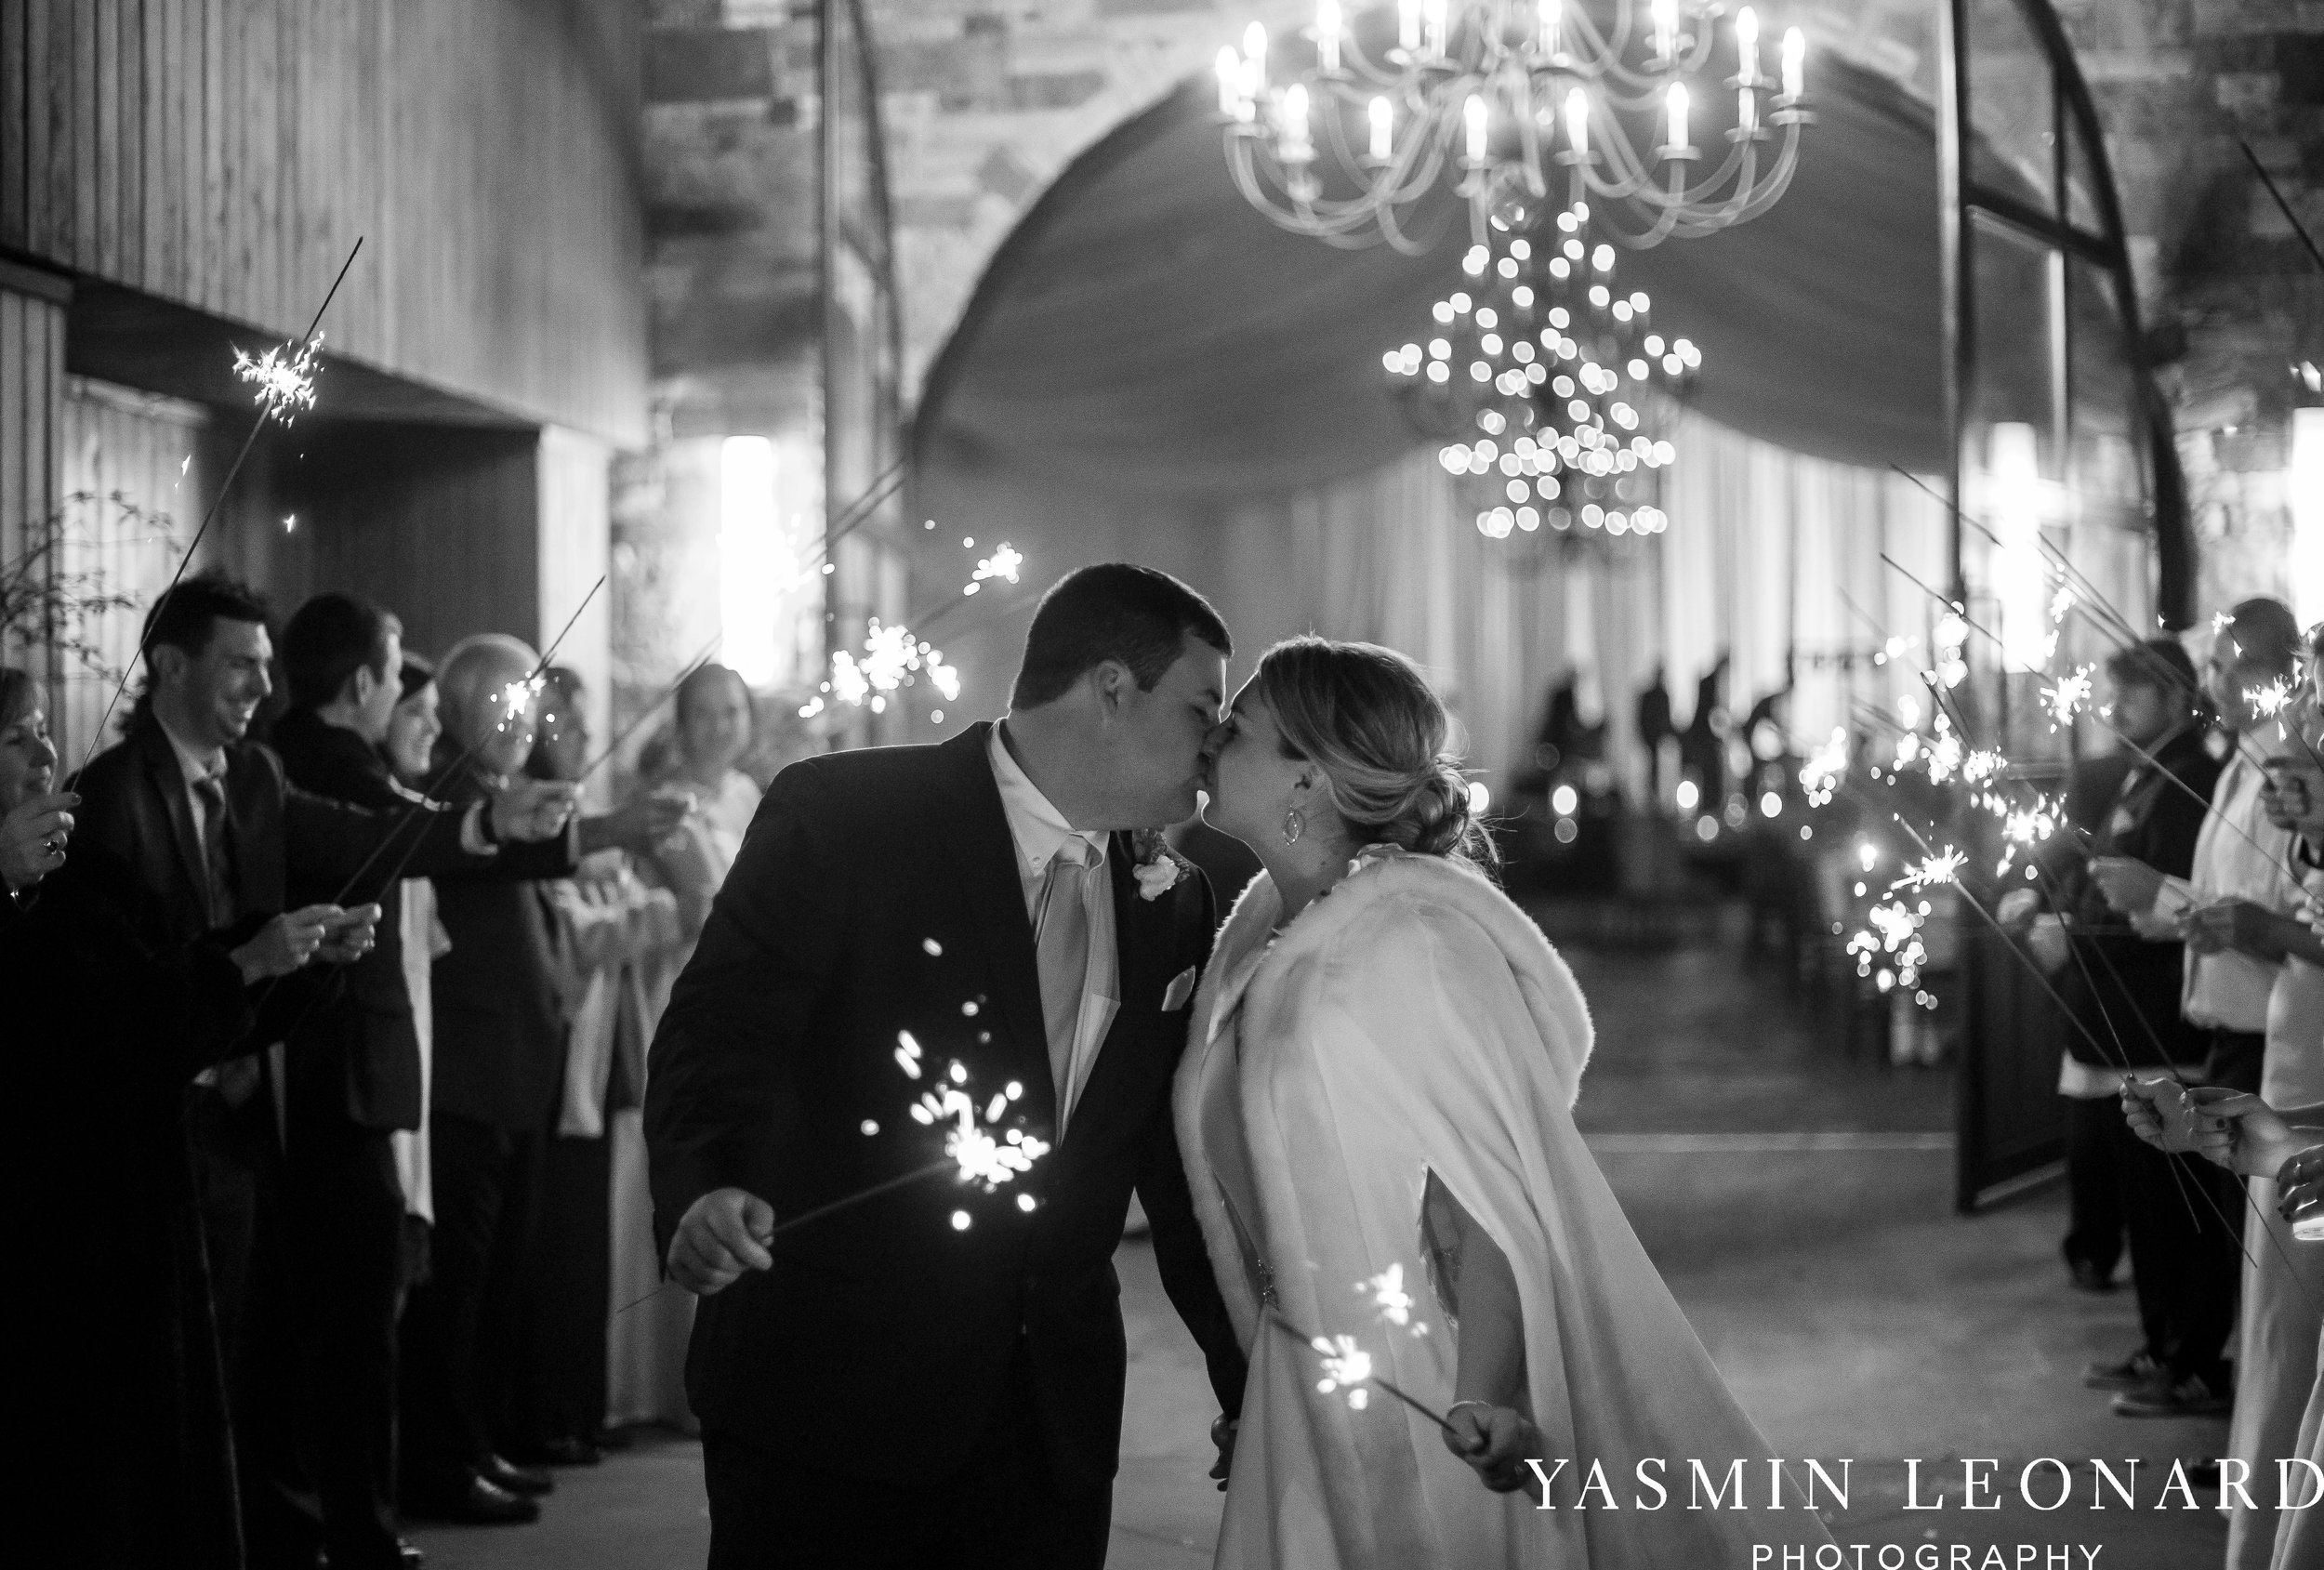 Adaumont Farm - Wesley Memorial Weddings - High Point Weddings - Just Priceless - NC Wedding Photographer - Yasmin Leonard Photography - High Point Wedding Vendors-80.jpg